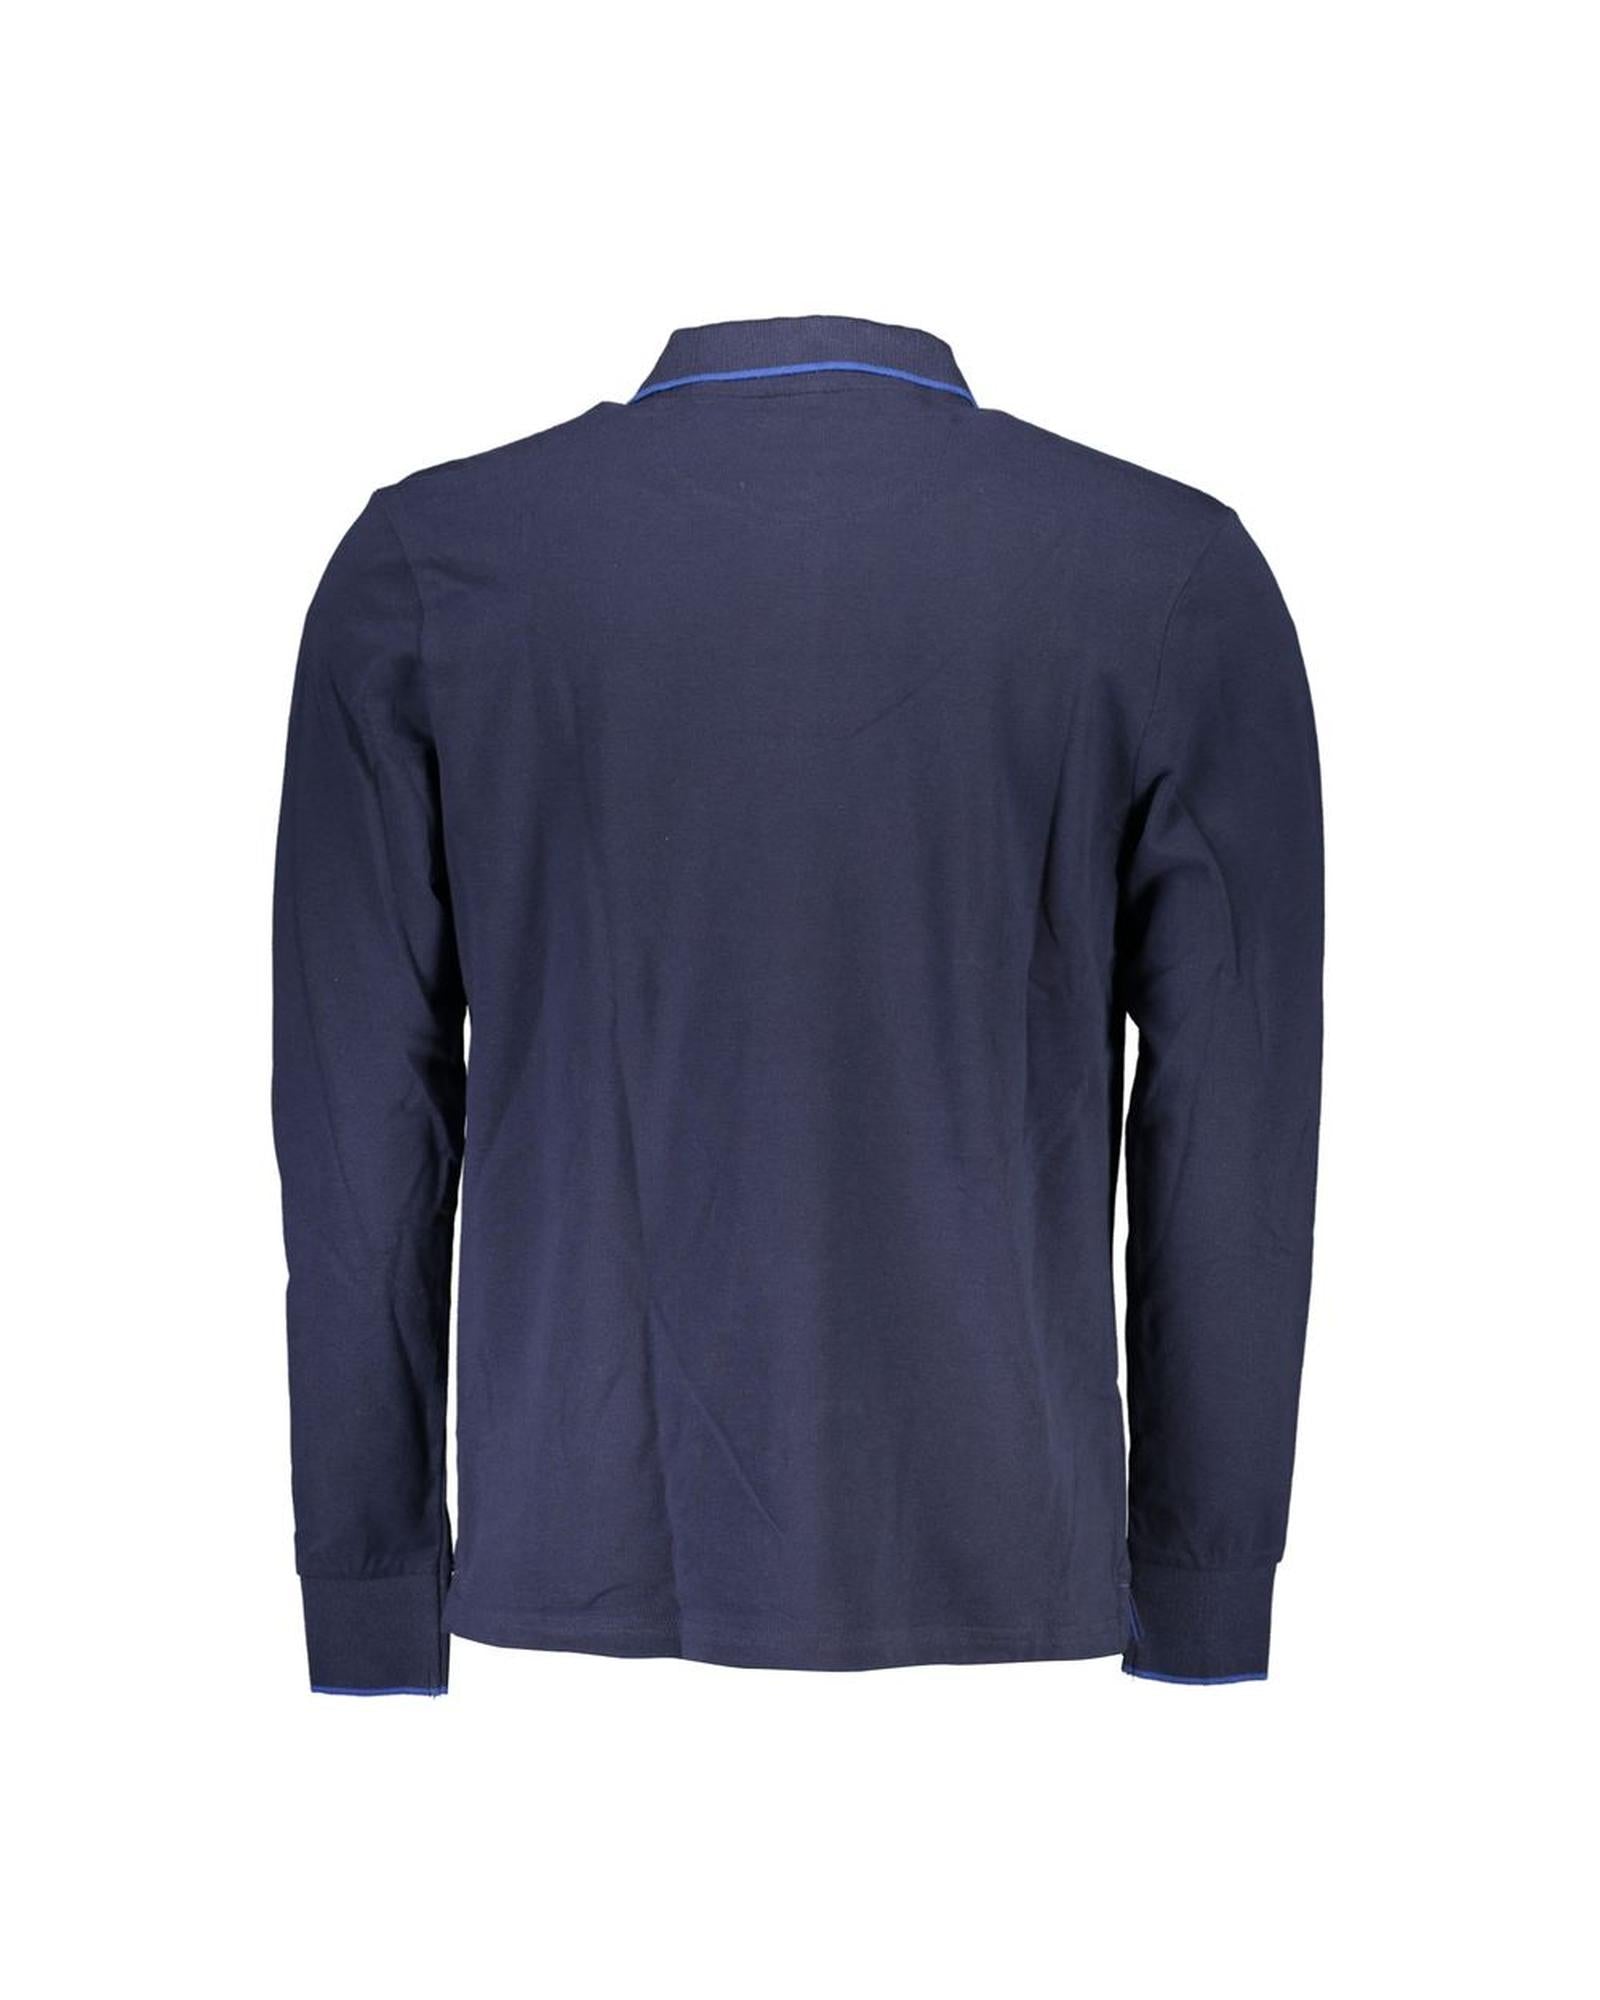 North Sails Men's Blue Cotton Polo Shirt - M